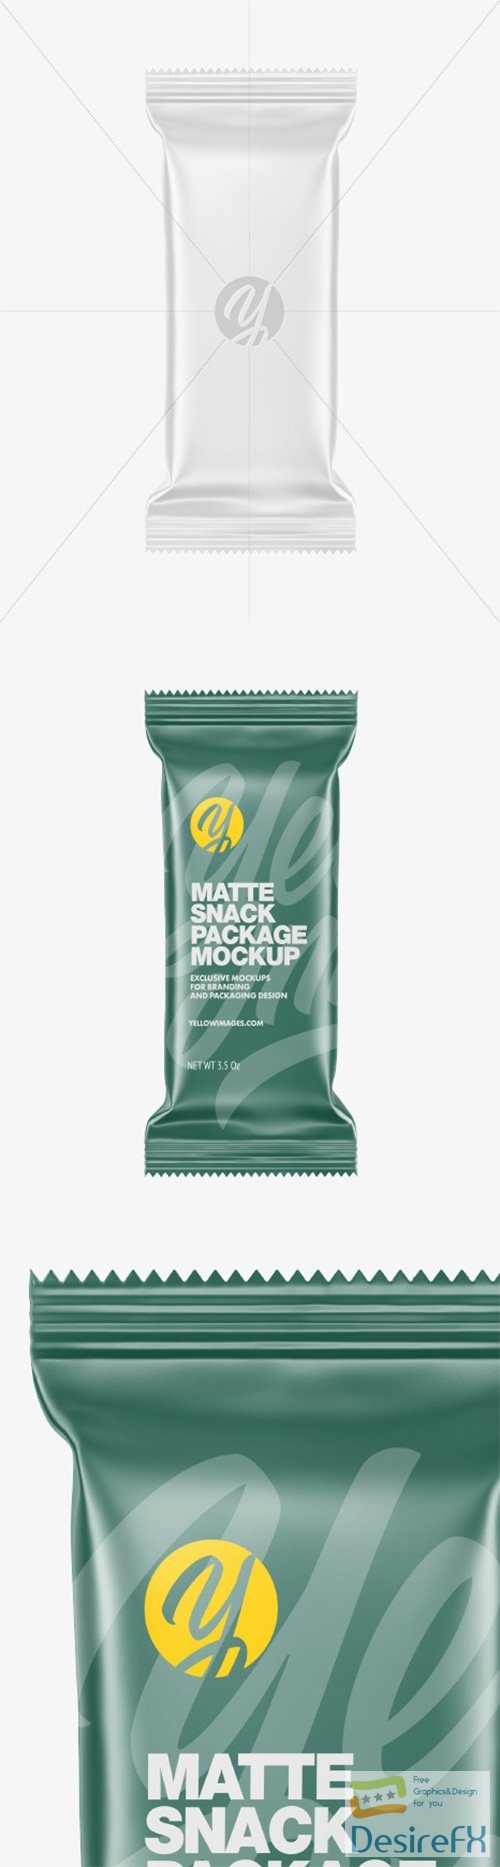 Matte Snack Package Mockup 78738 TIF